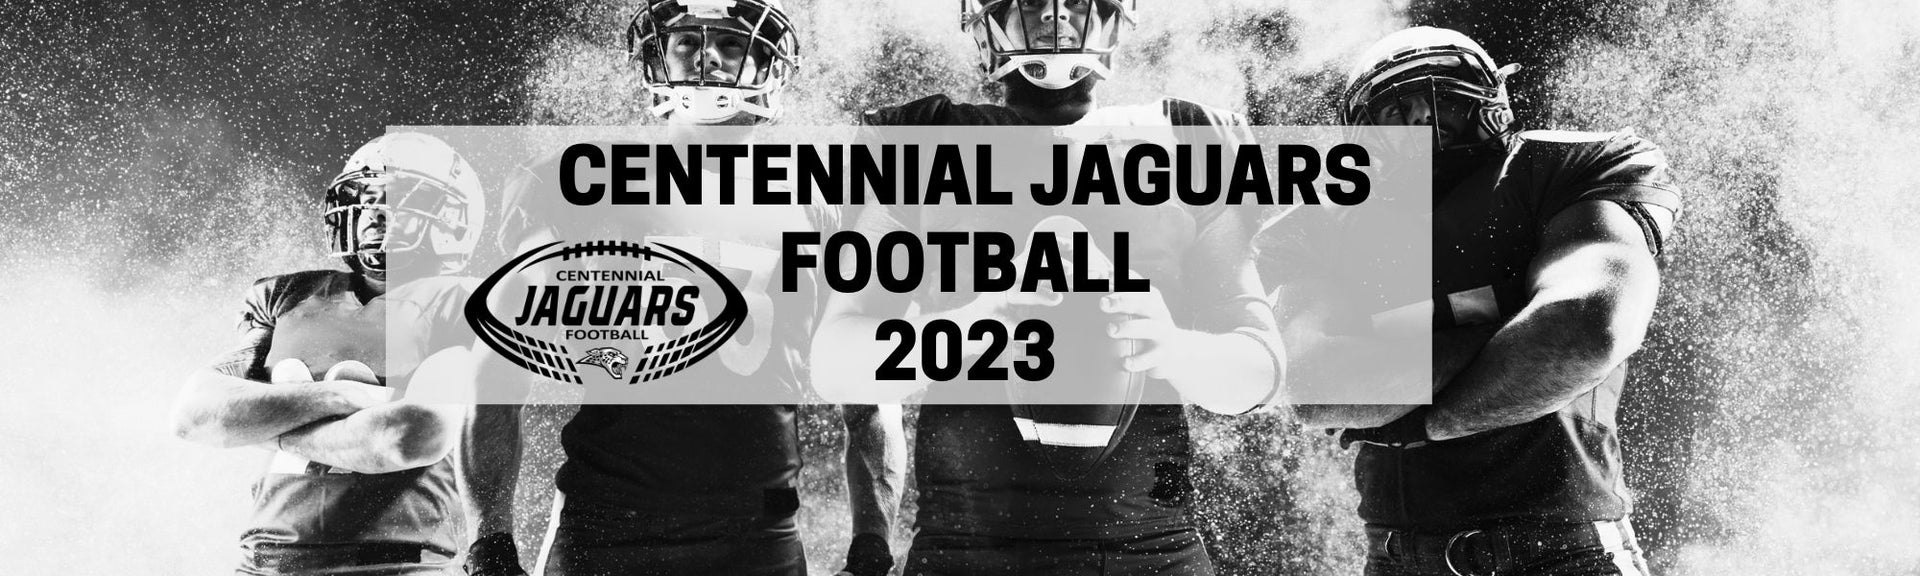 Centennial Jaguars Football Fundraiser 2023